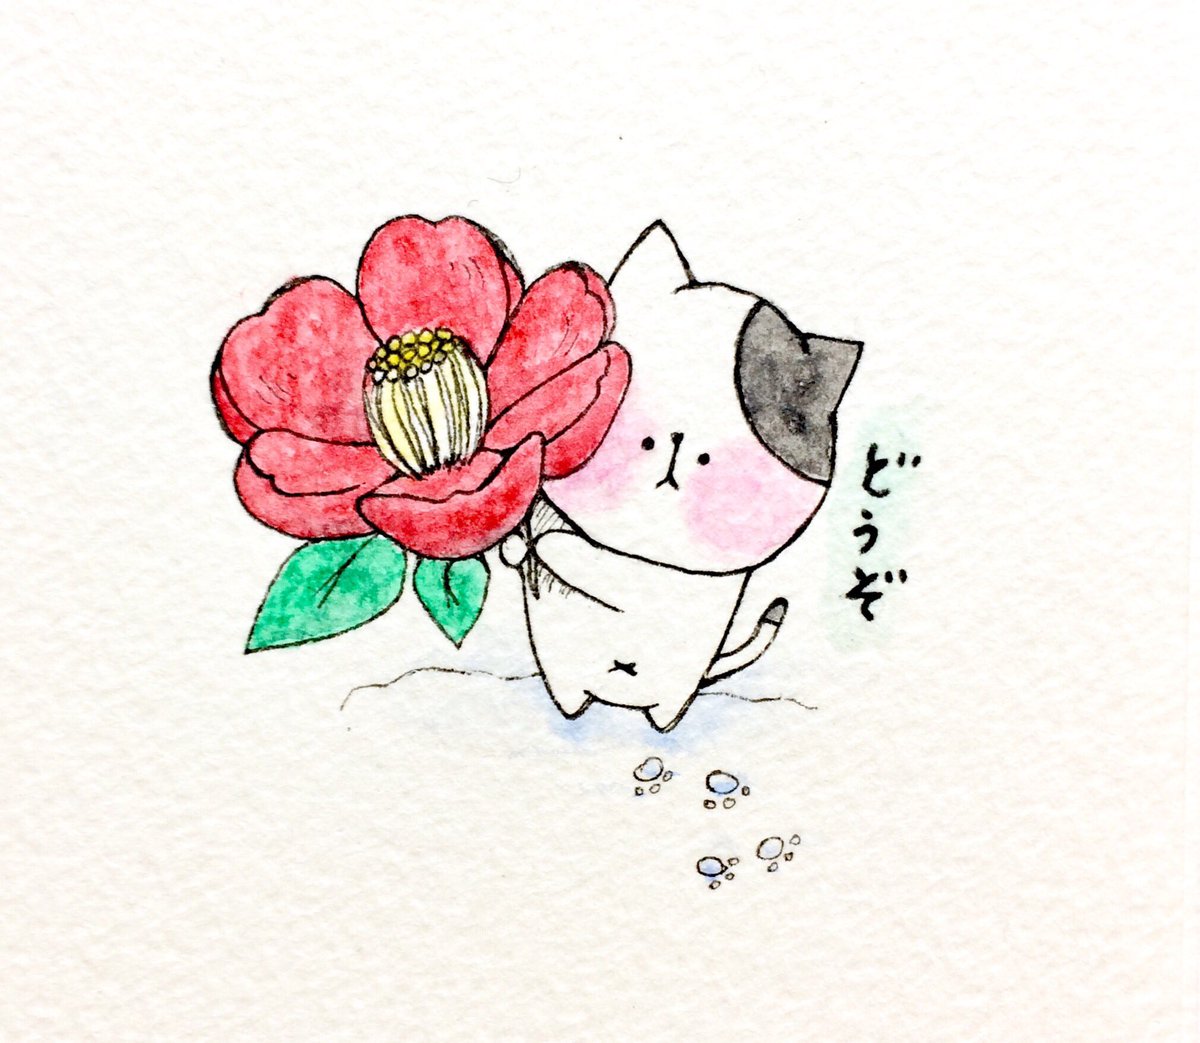 おこにゃん 椿が咲いたよ 椿 咲いた どうぞ 花 猫 ネコ ねこ イラスト 可愛い 手描き 癒し 絵描きさんと繋がりたい イラスト好きな人と繋がりたい Cats T Co Pqzpphfcew Twitter